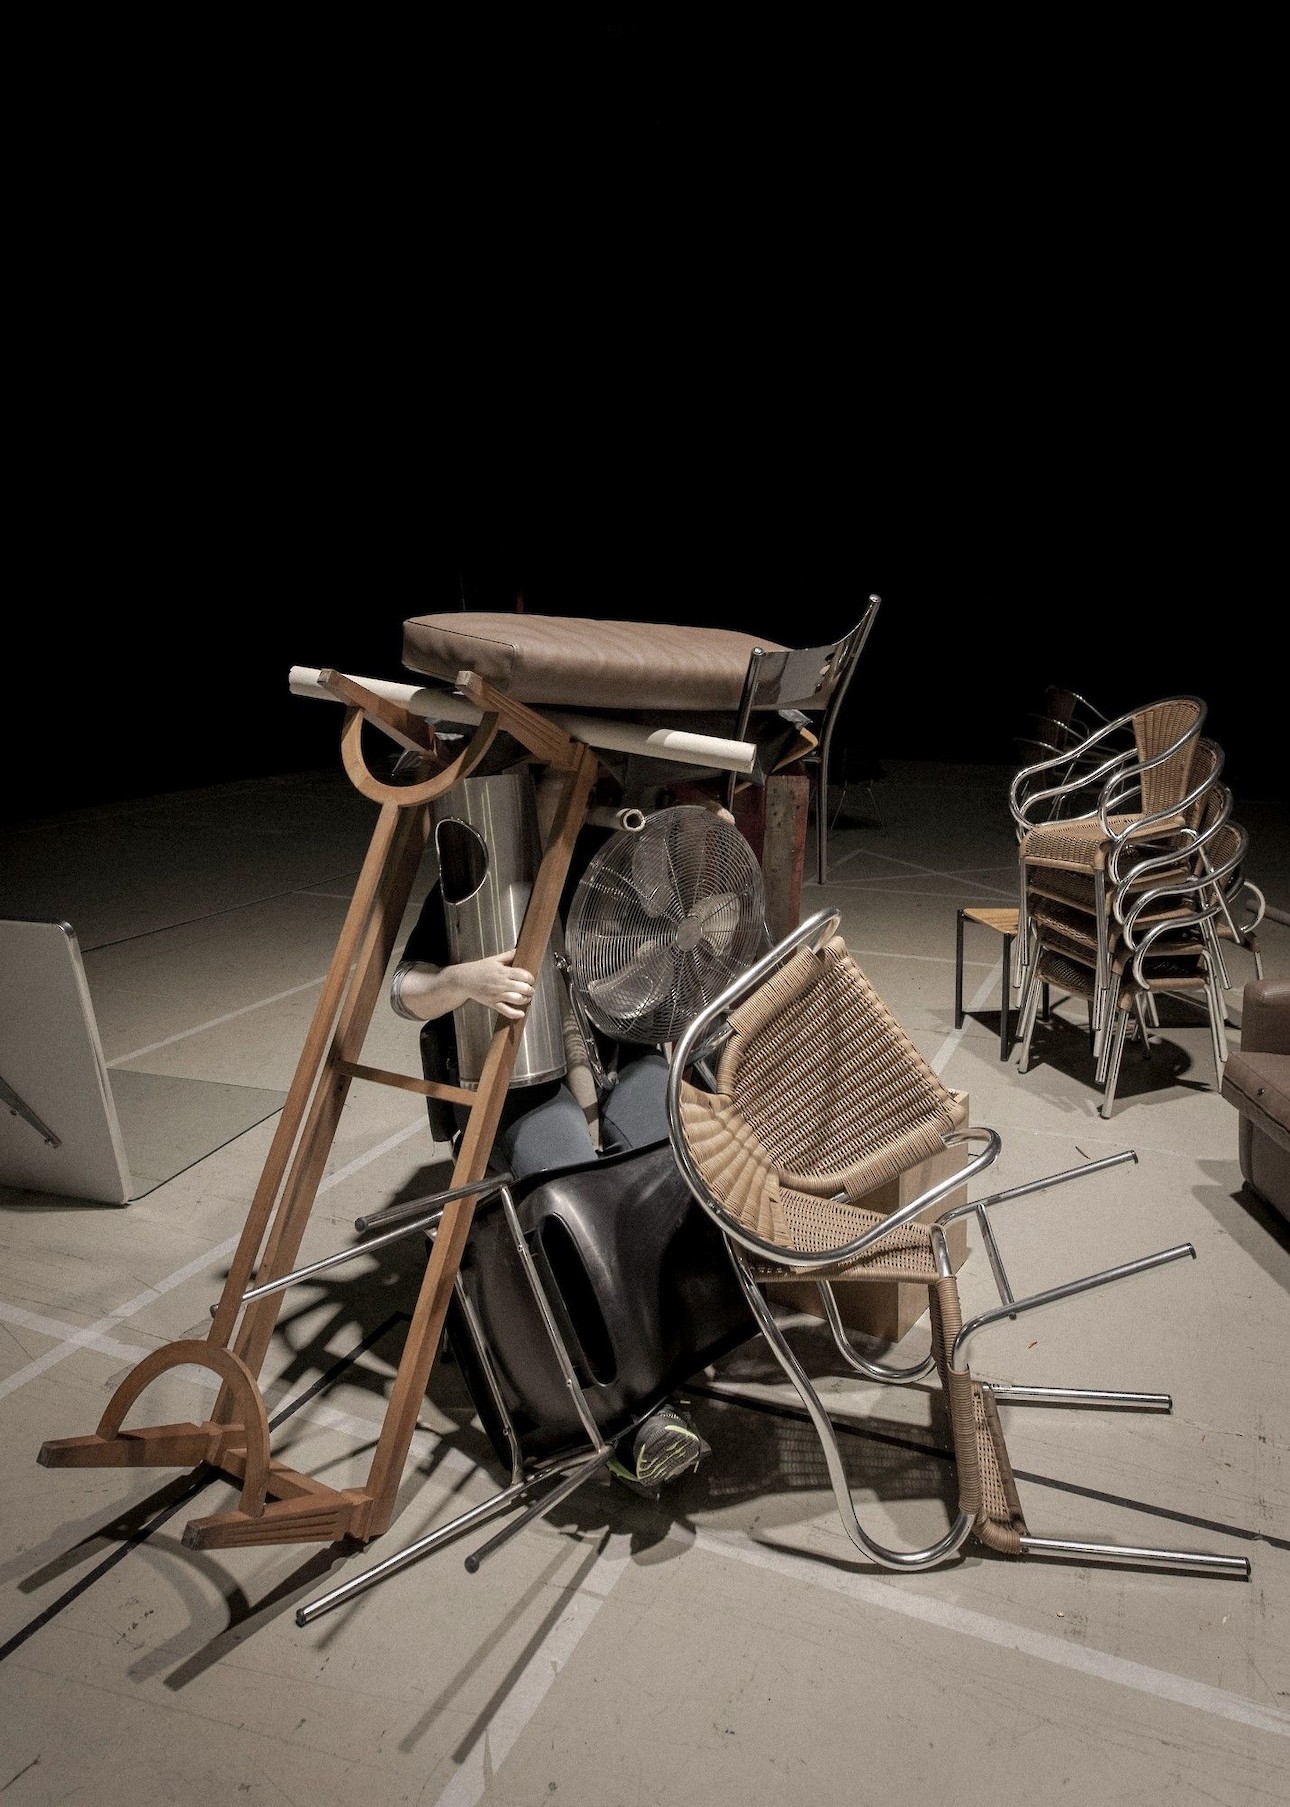 ALKANARA - Vários objetos como cadeiras, cinzeiros de rua, sapataeiras, e mãos de manequim, amontoados num fundo preto. - ©João Tuna